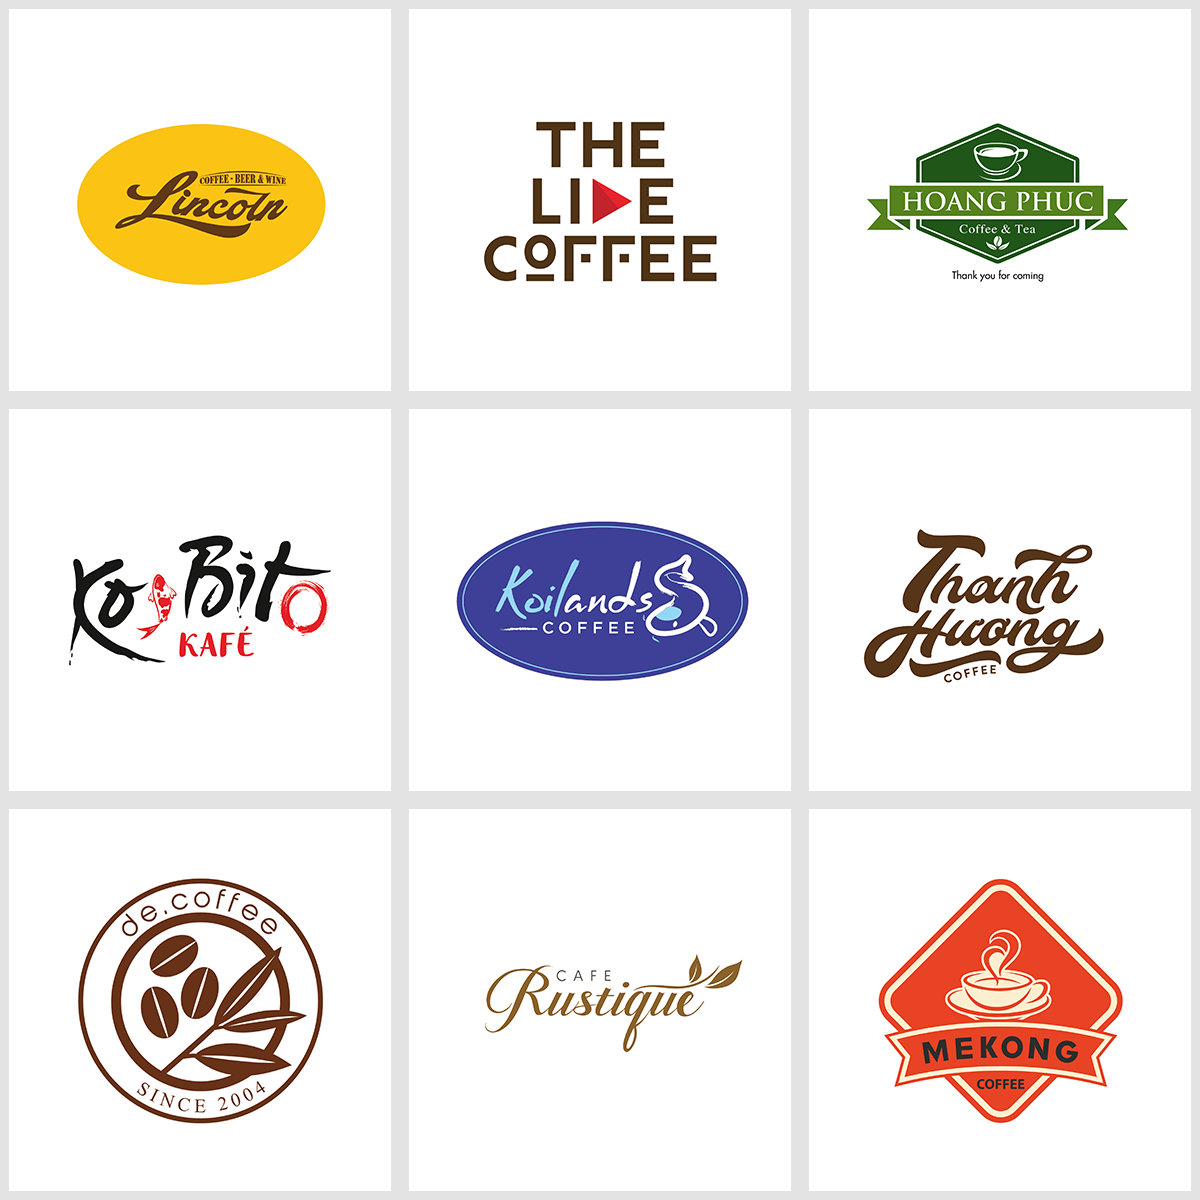 Thiết Kế Logo Quán Cà Phê: Logo là một phần không thể thiếu của một quán cà phê. Một logo đẹp và ấn tượng sẽ giúp cho quán của bạn trở nên đặc biệt và nhận diện được với khách hàng. Với sự kết hợp hài hòa giữa gam màu và hình ảnh, logo của quán bạn chắc chắn sẽ trở thành một biểu tượng thương hiệu hoàn hảo.